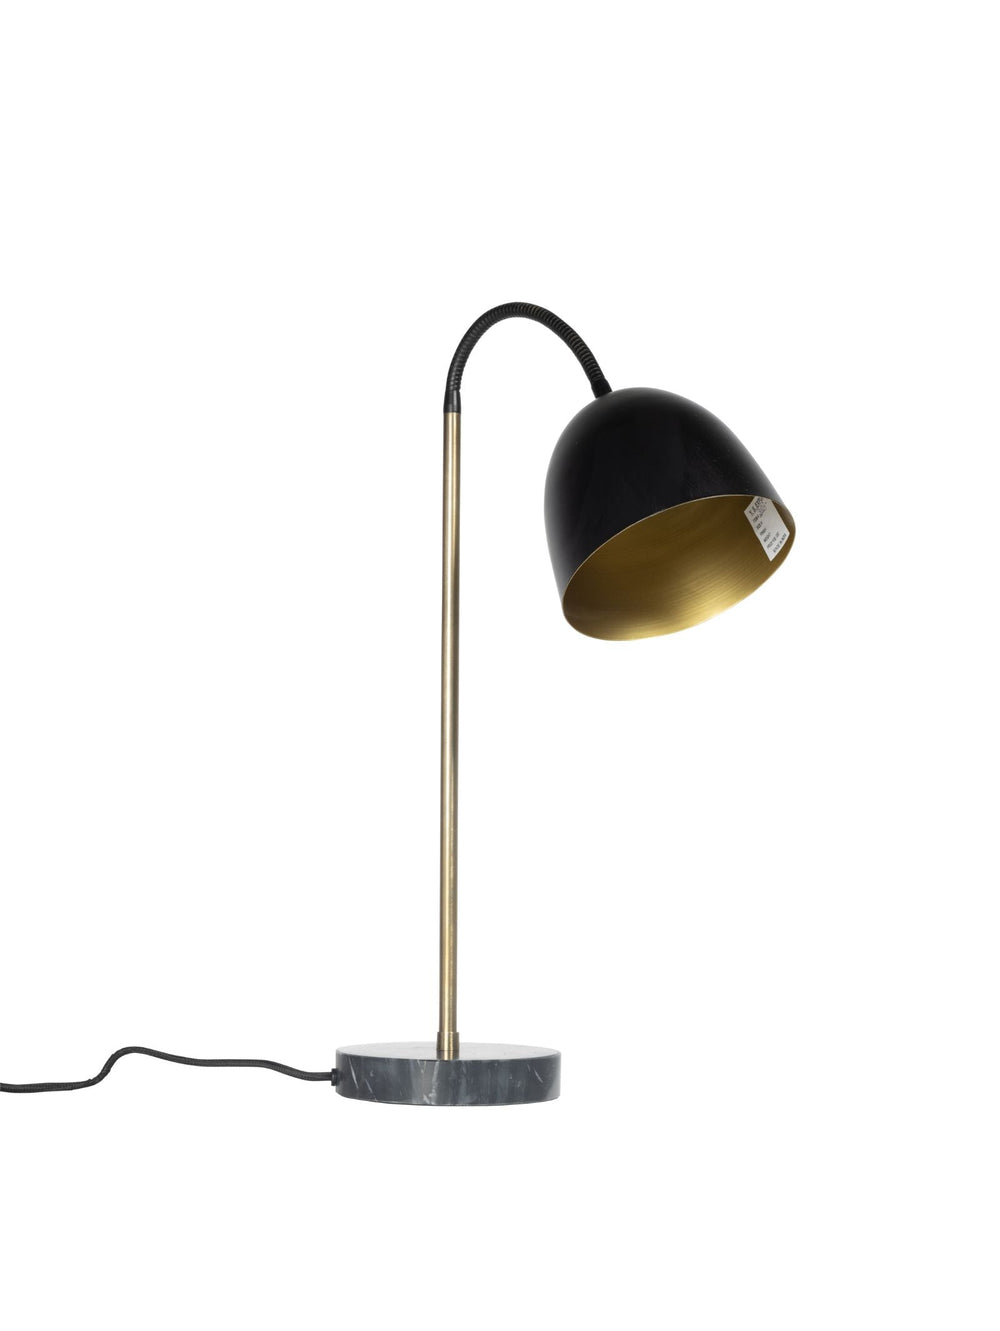 Barcelona Desk Lamp in Liquorice - lamp- Hertex Haus Online - Homeware